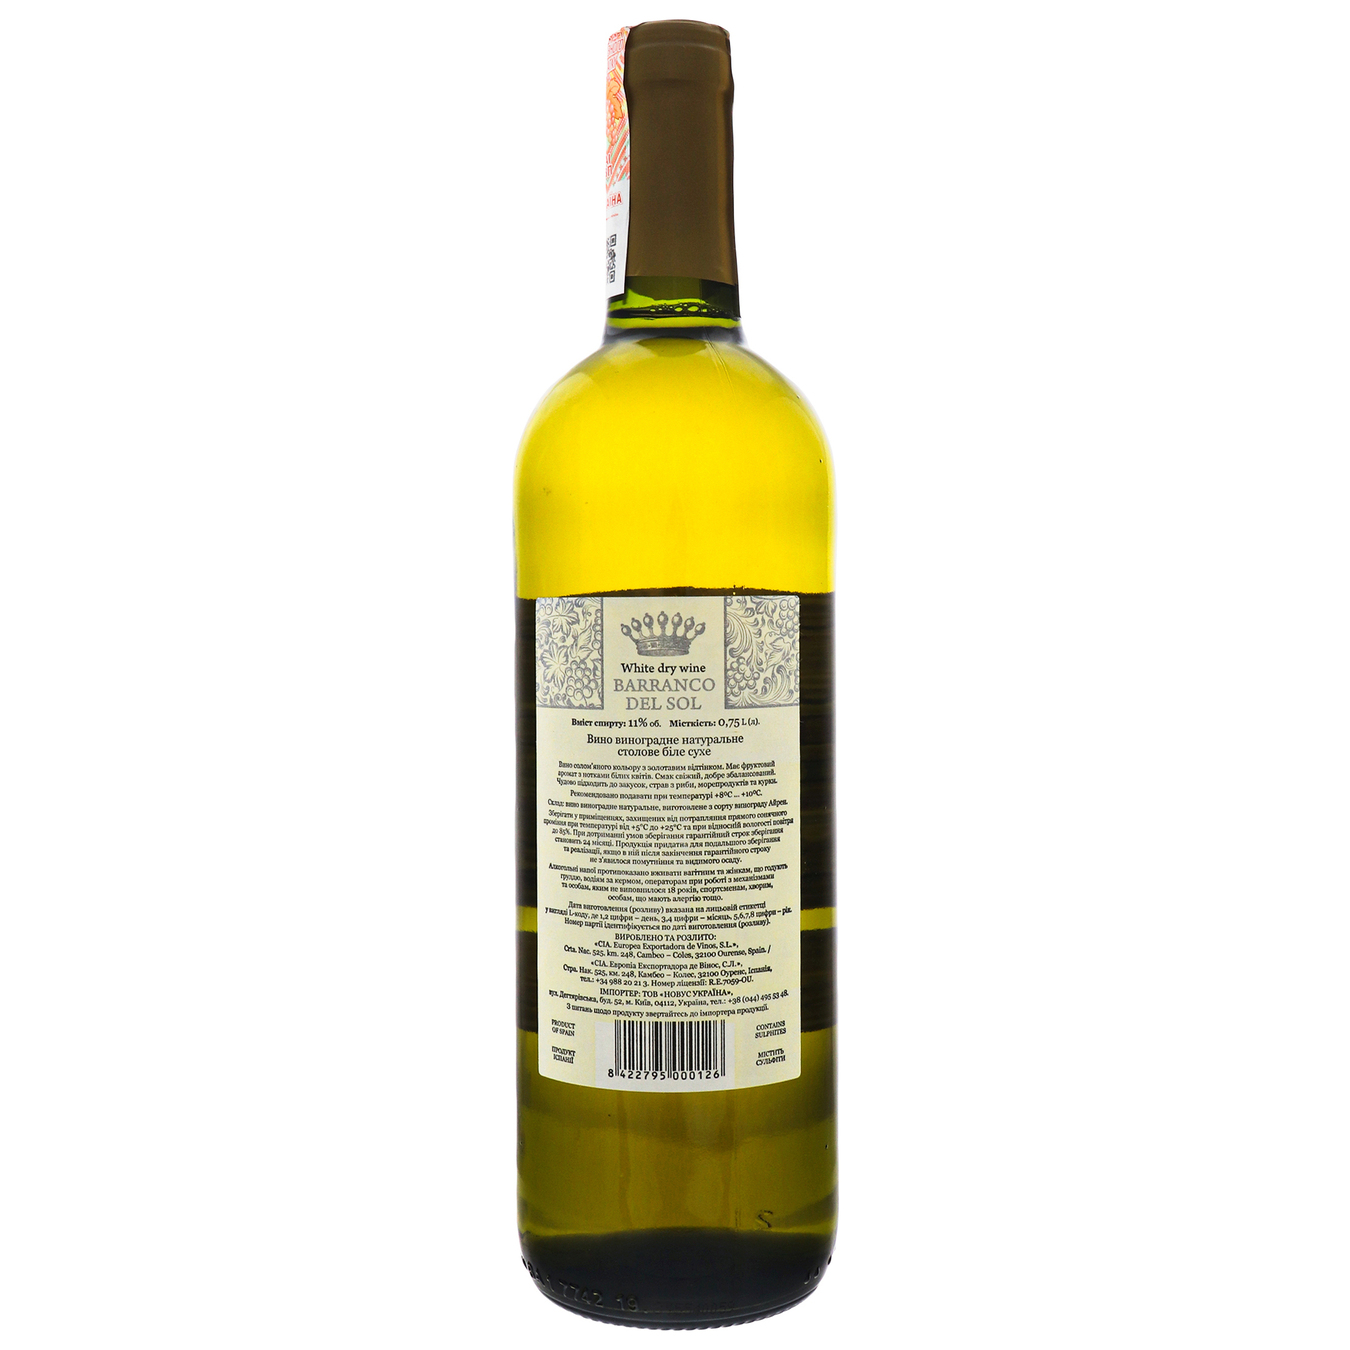 Barranco del Sol white dry wine 11% 0,75l 2